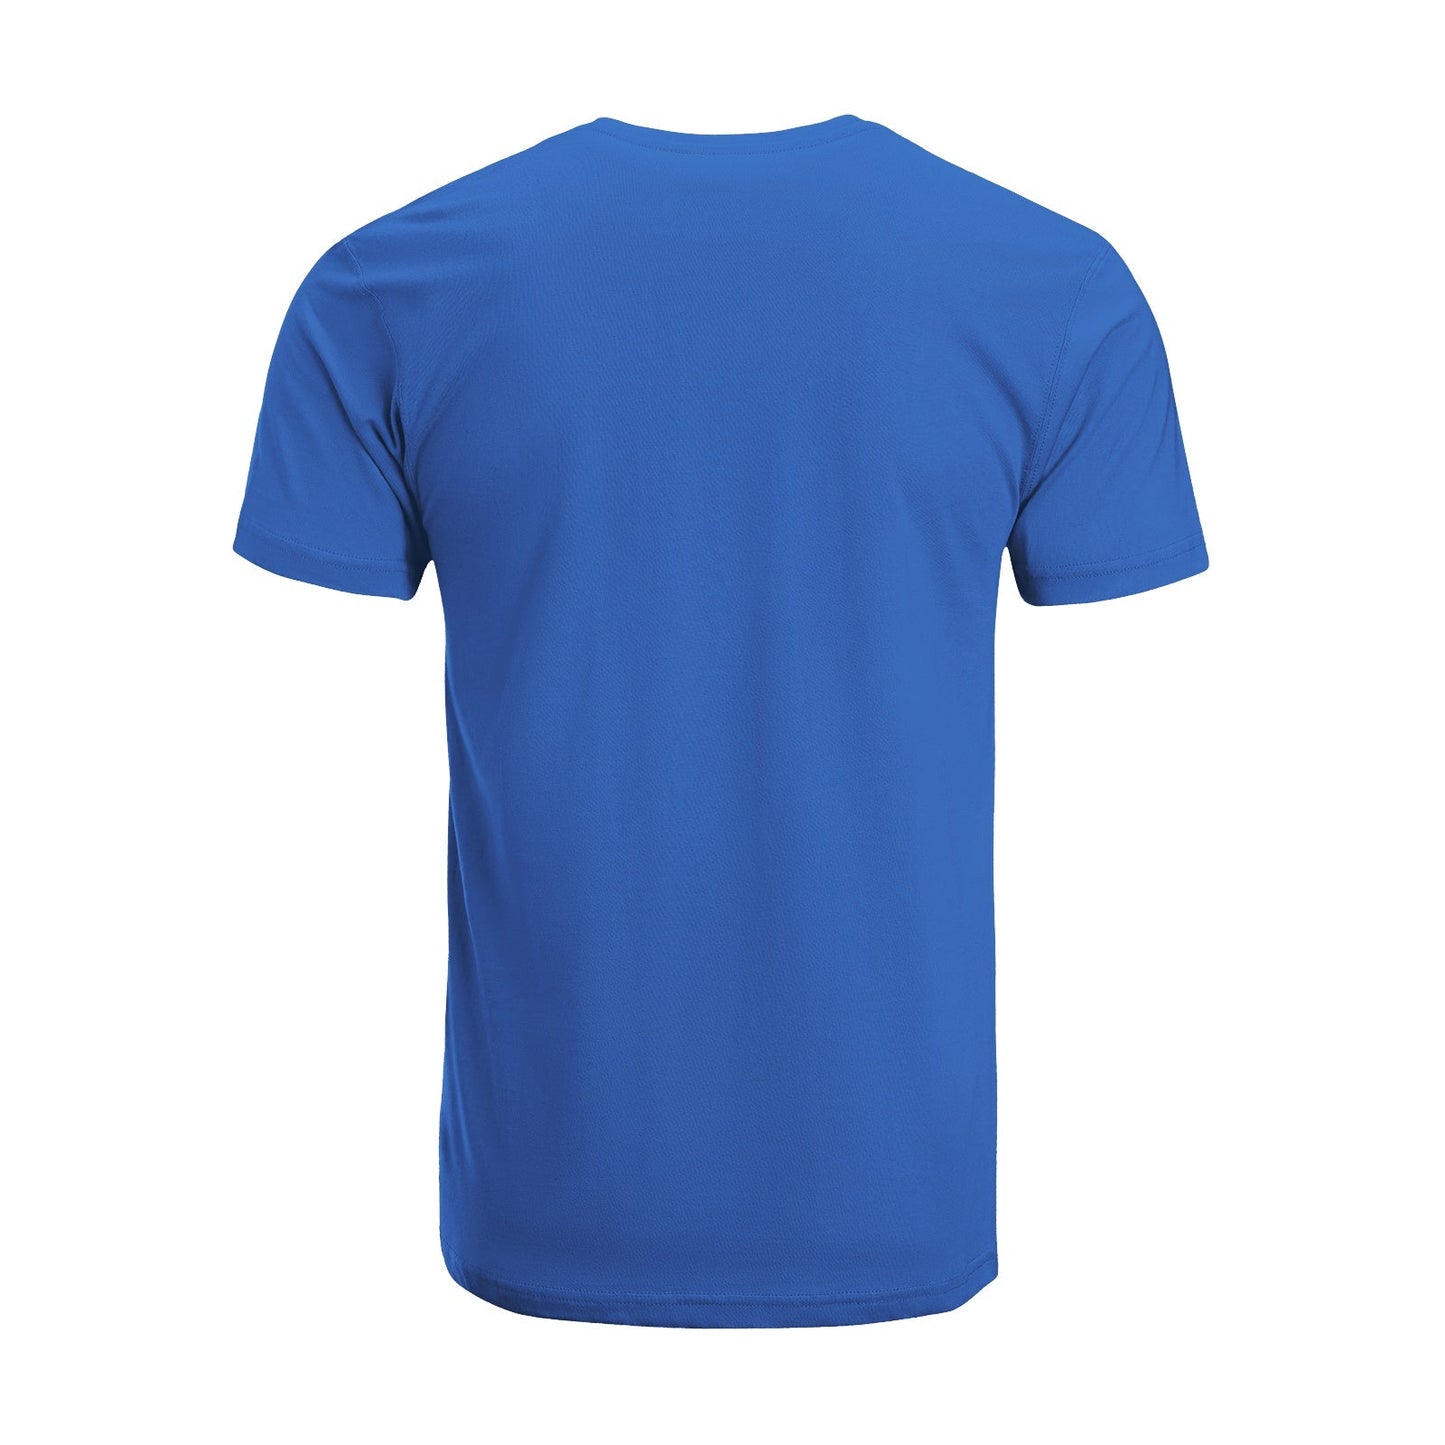 Unisex Short Sleeve Crew Neck Cotton Jersey T-Shirt TRUCK 38